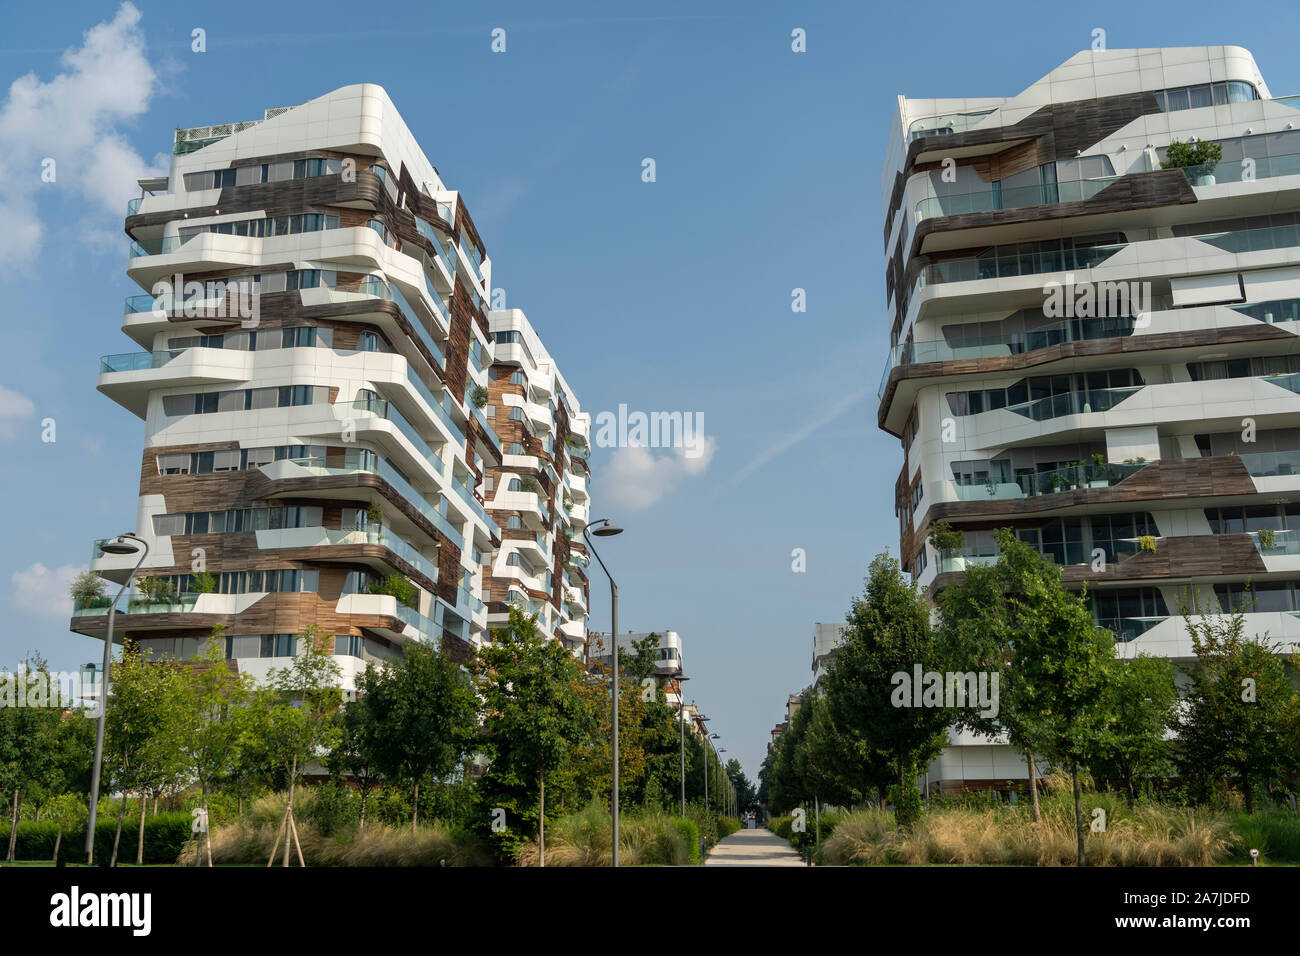 Mailand, Lombardei, Italien: Die modernen Hadid Wohngebäude in den neuen Citylife Bereich Stockfoto